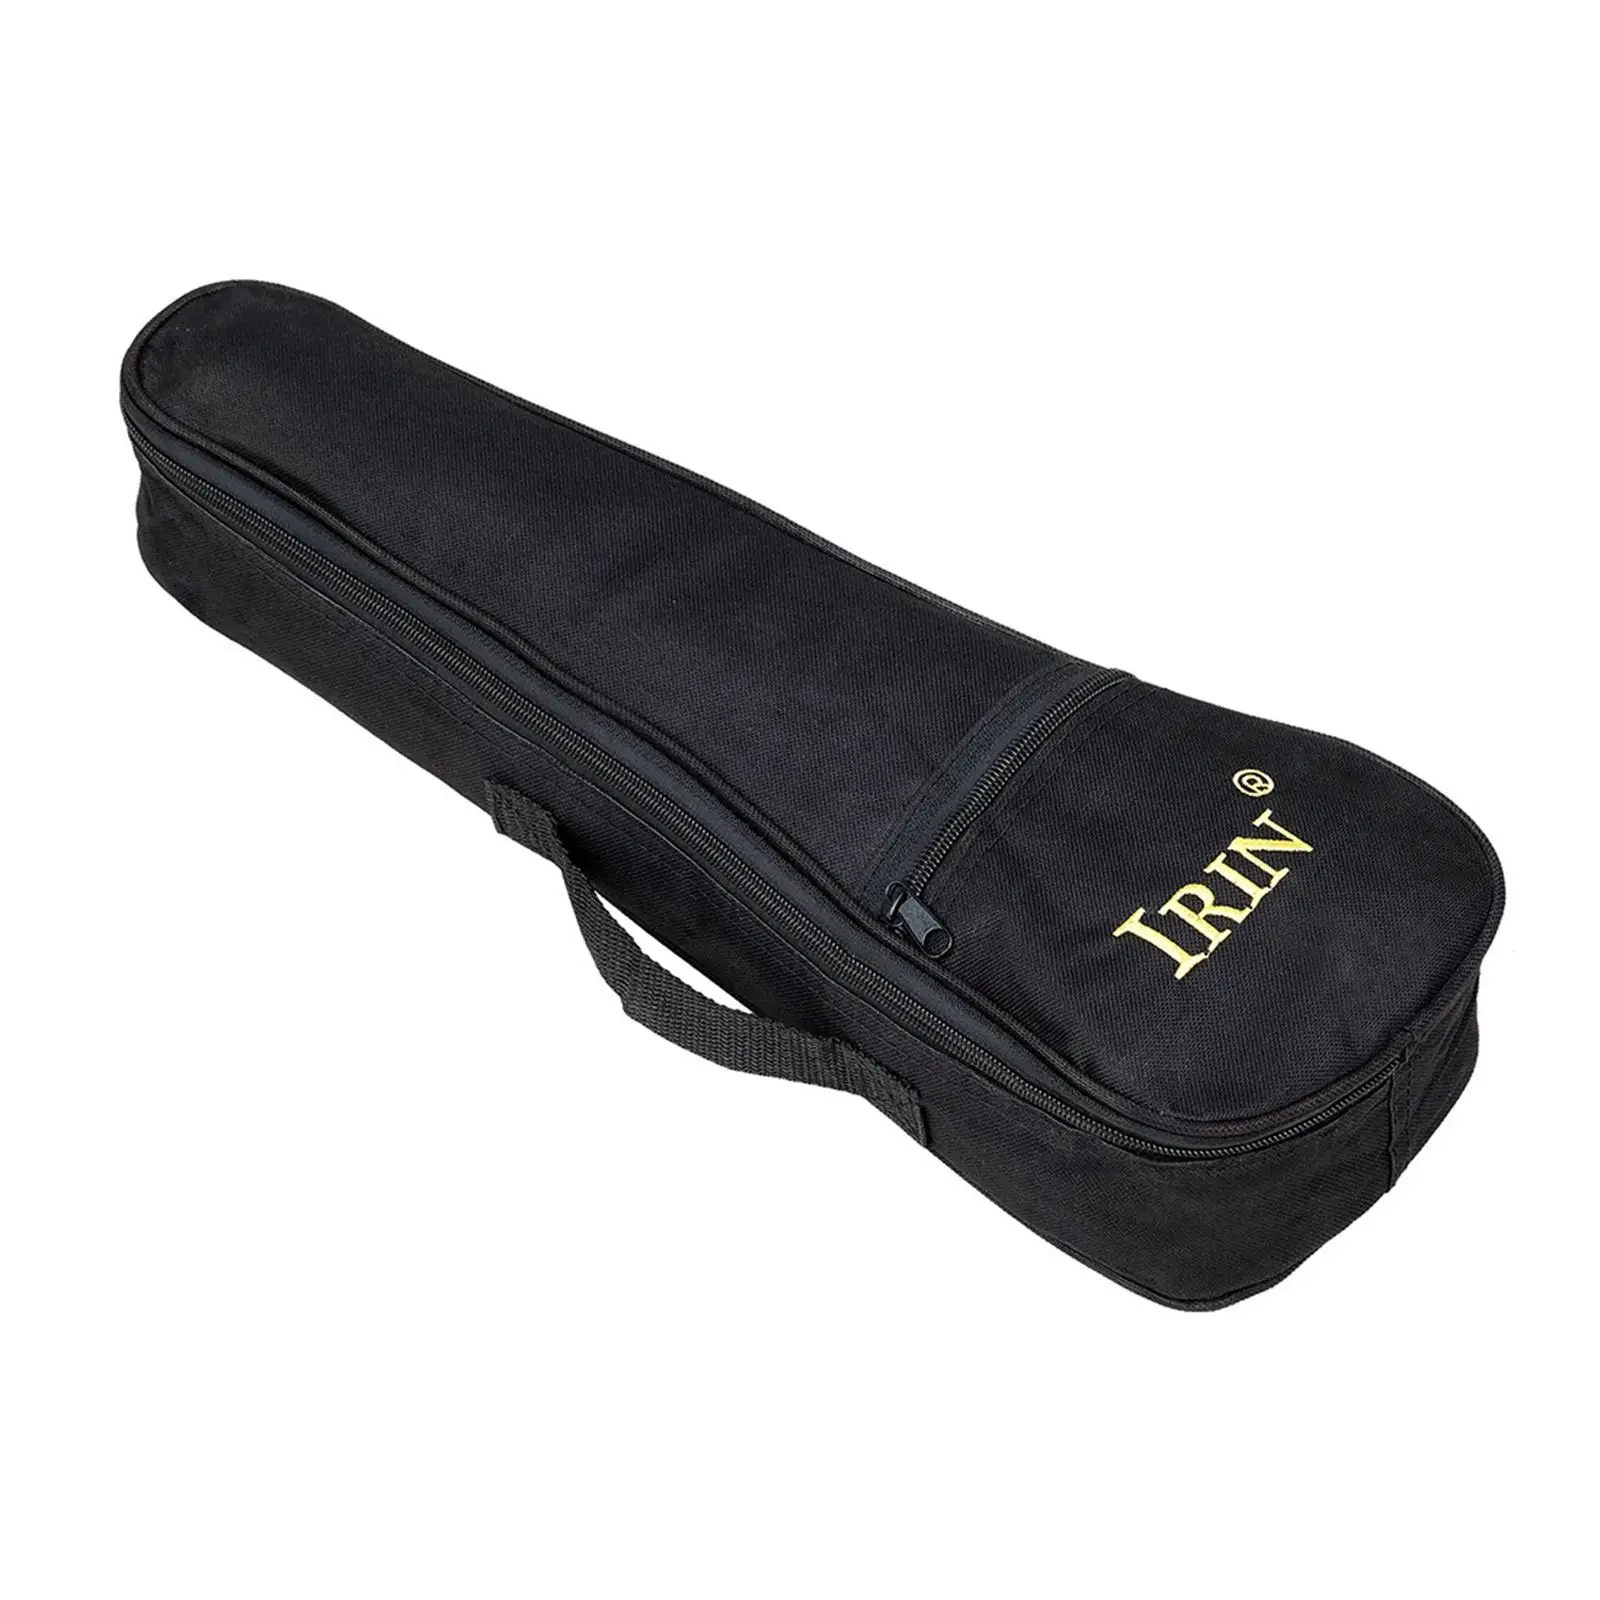 Uke Backpack Storage Soft Case & Adjustable Shoulder Strap Ukulele Gig Bag for Concert